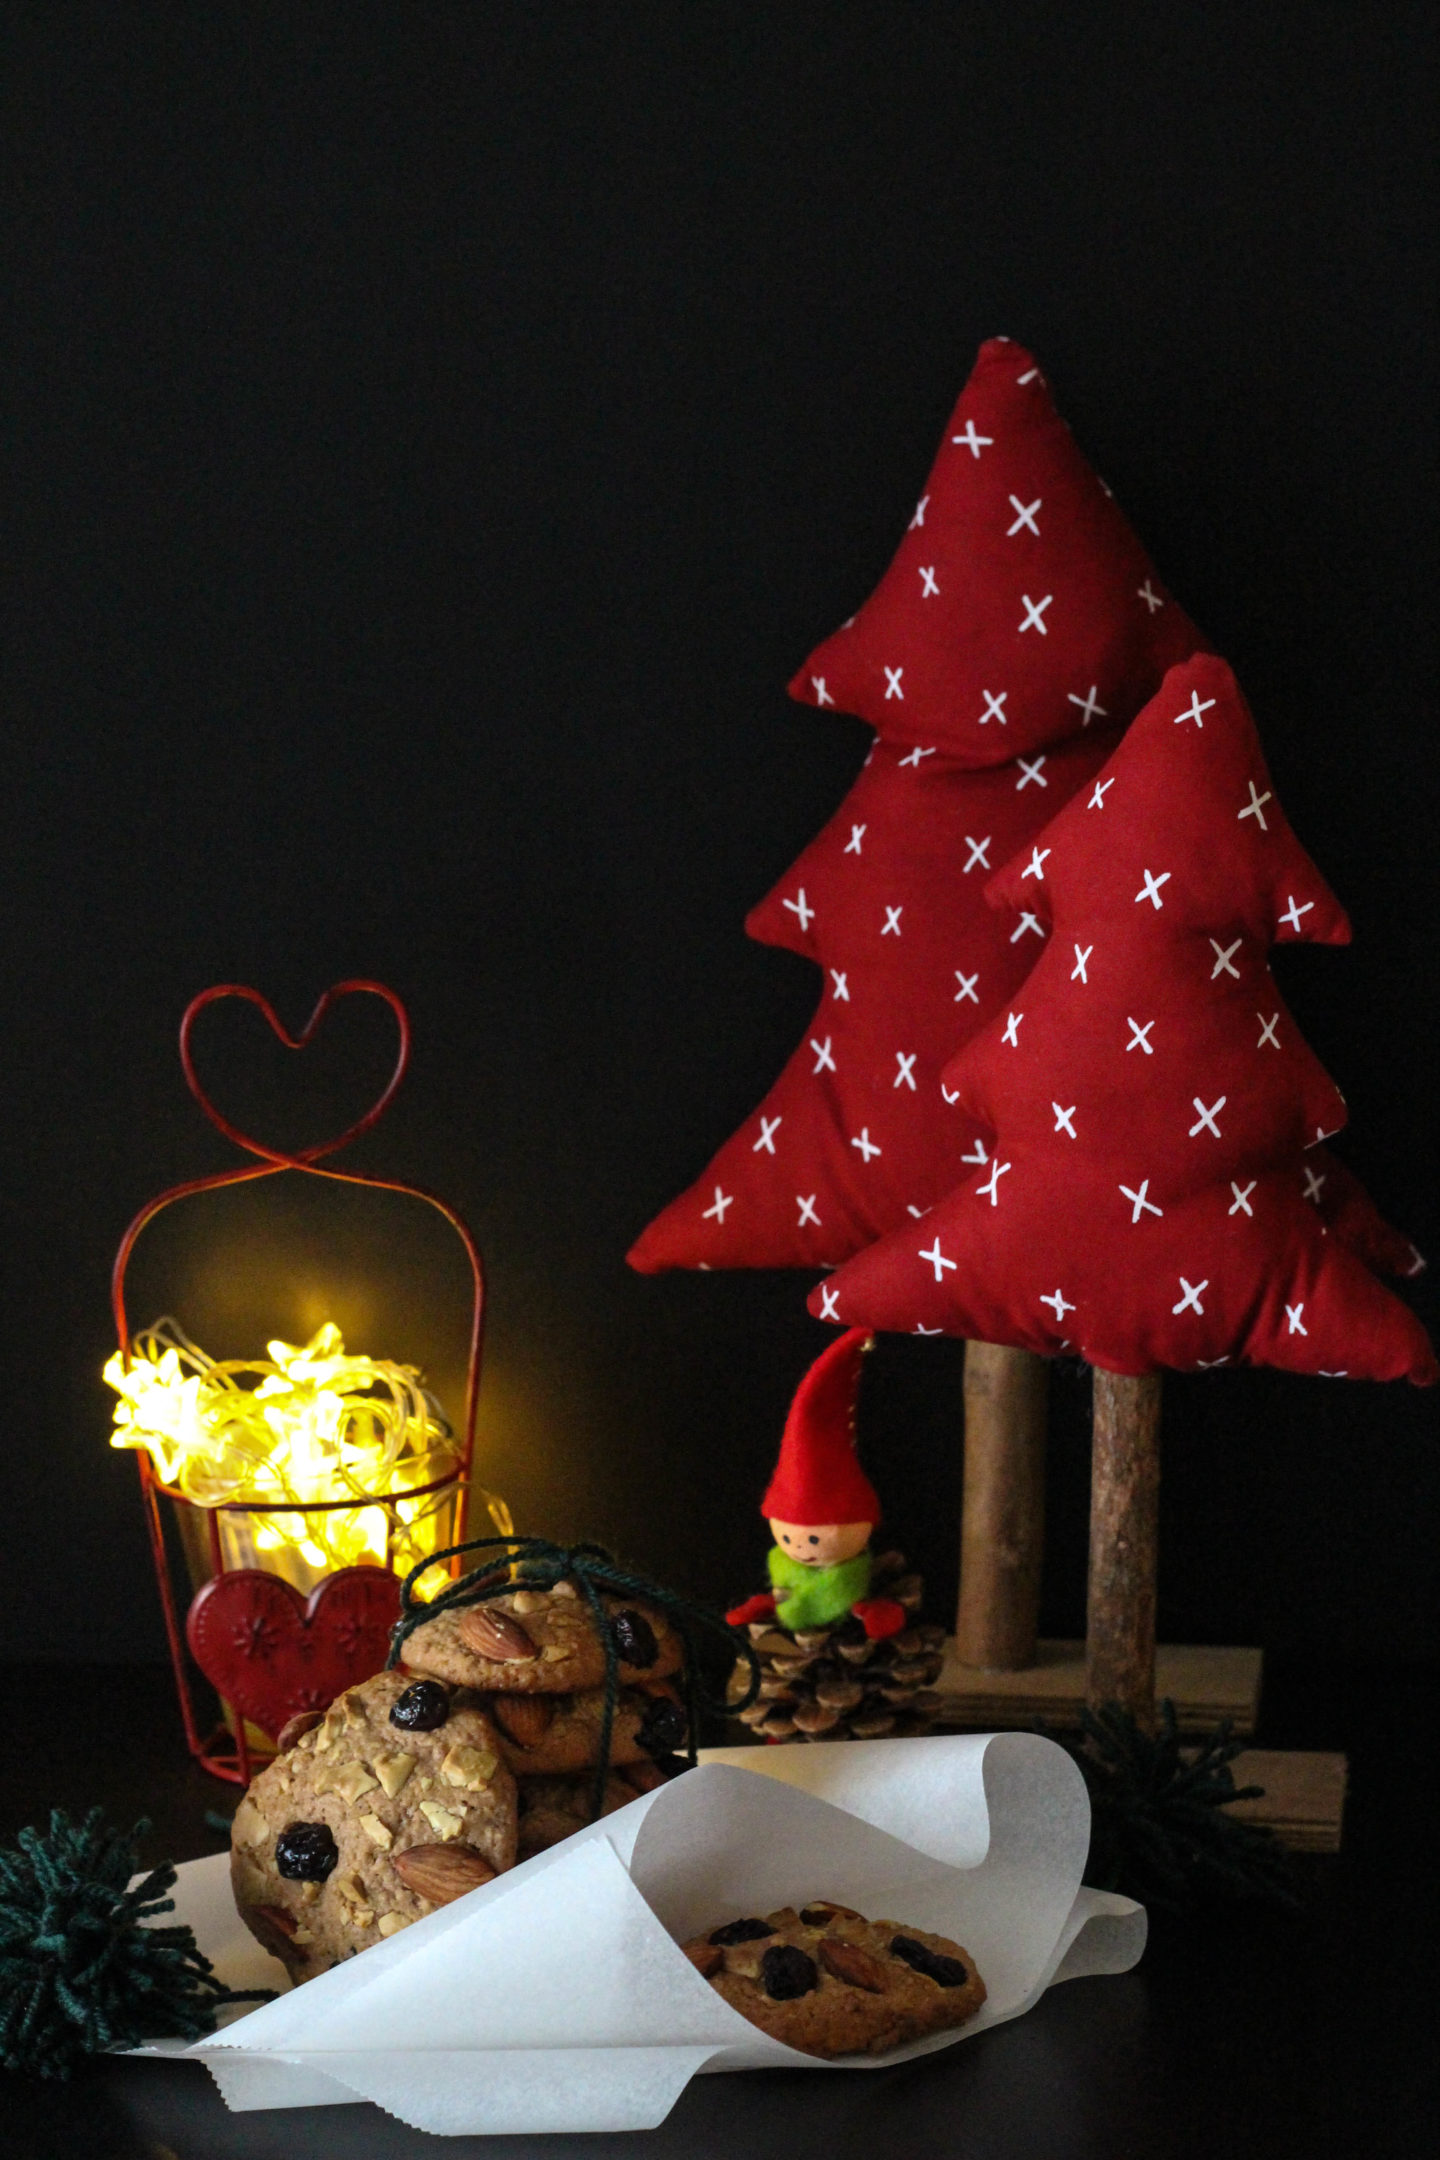 vegane-cookies-schokolade-cranberrys-weihnachten-christmas-1-von-1-2